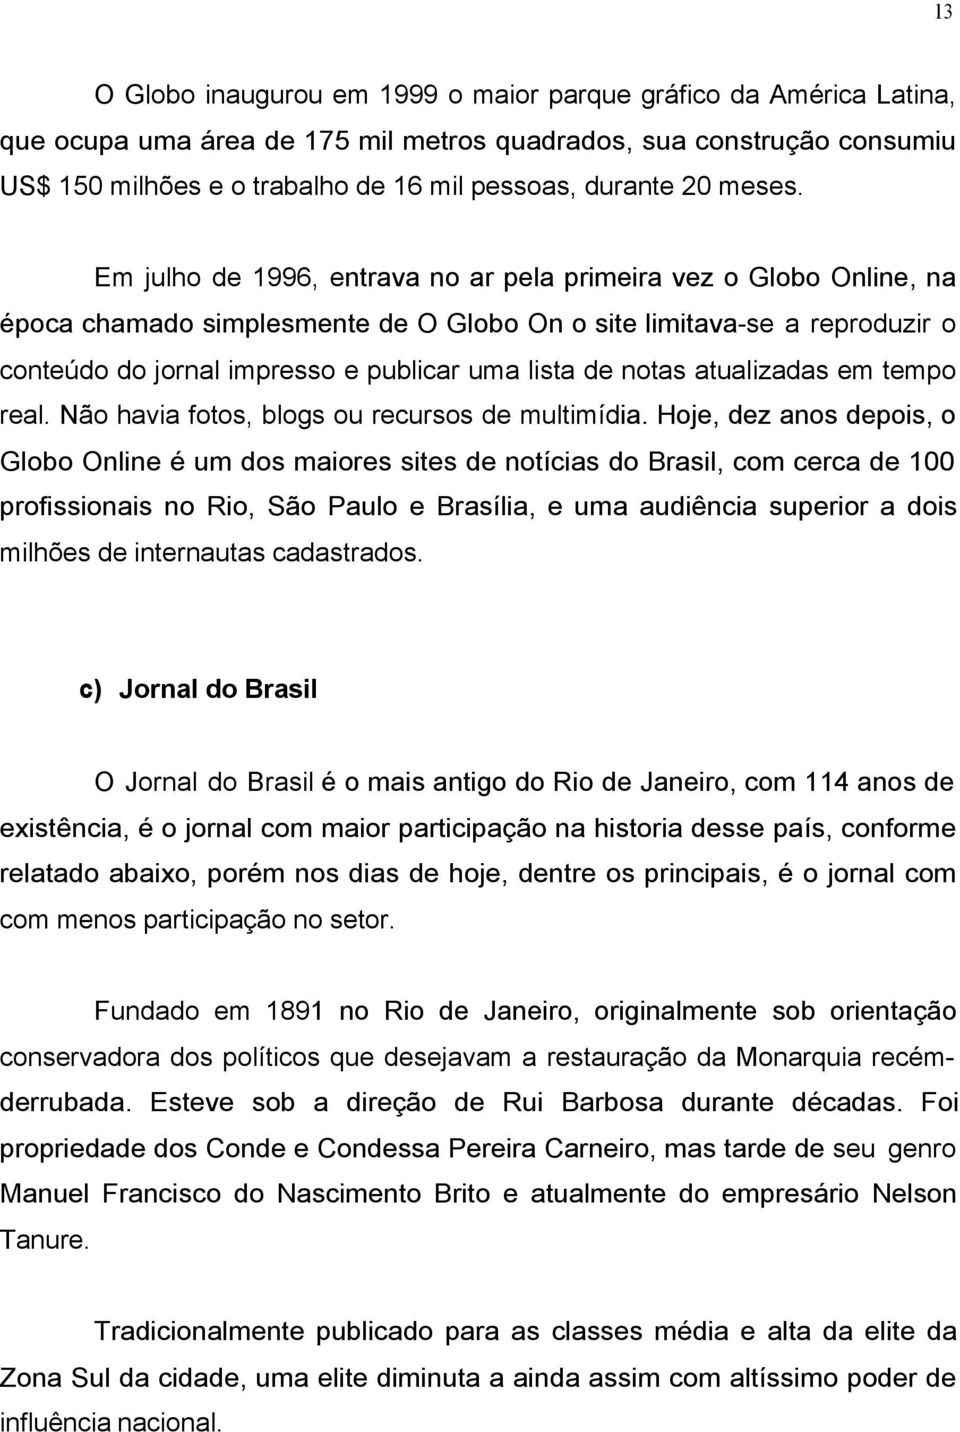 Em julho de 1996, entrava no ar pela primeira vez o Globo Online, na época chamado simplesmente de O Globo On o site limitava-se a reproduzir o conteúdo do jornal impresso e publicar uma lista de